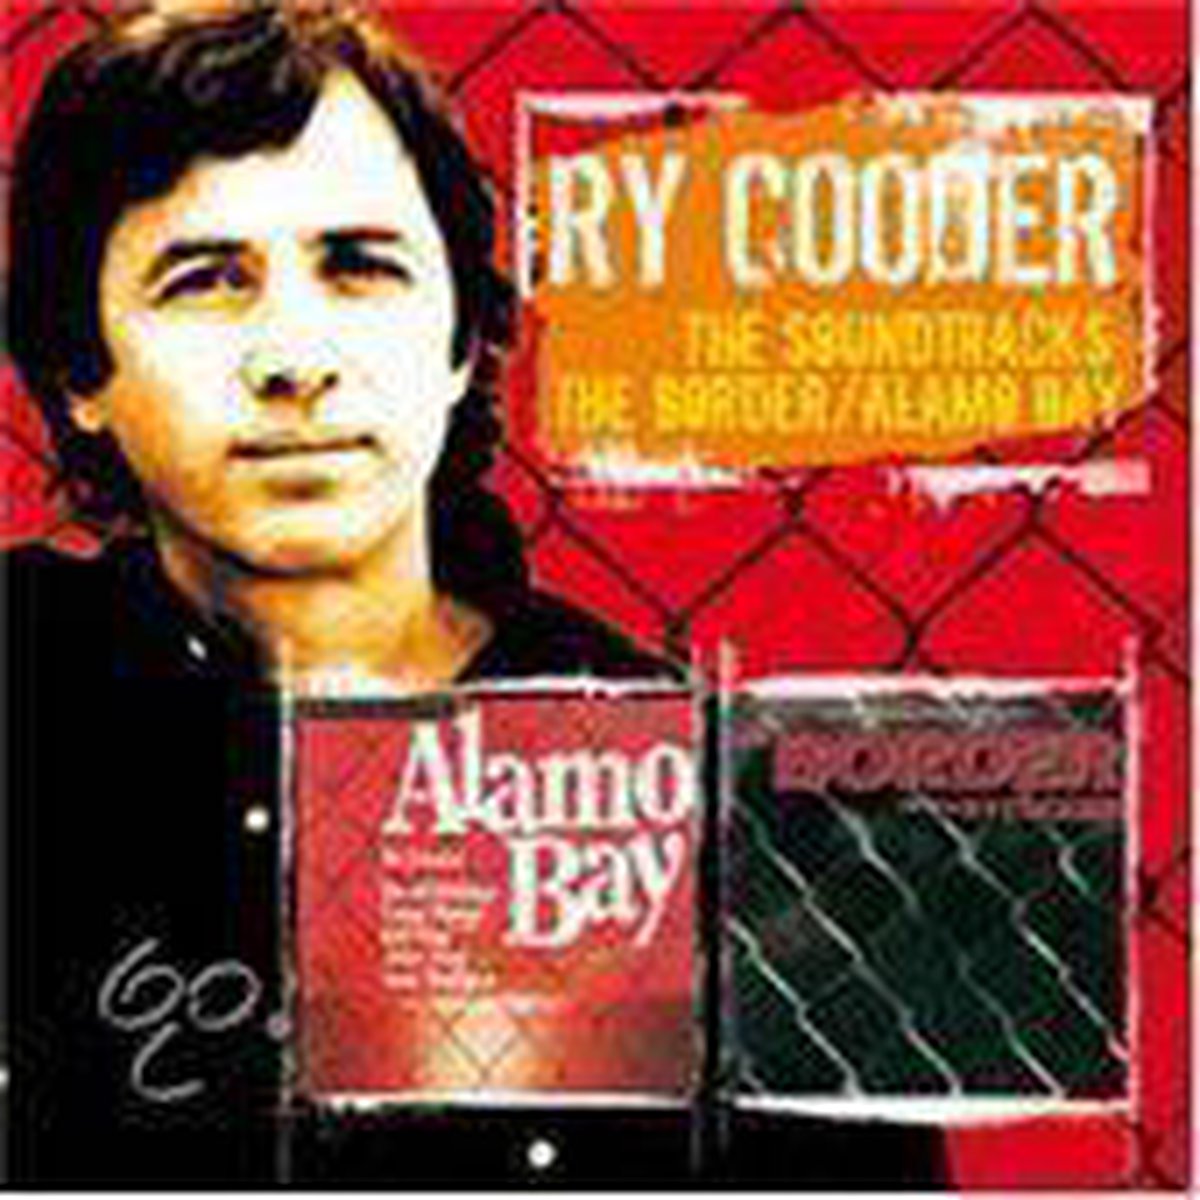 Border/Alamo Bay [Original Soundtracks] - Ry Cooder